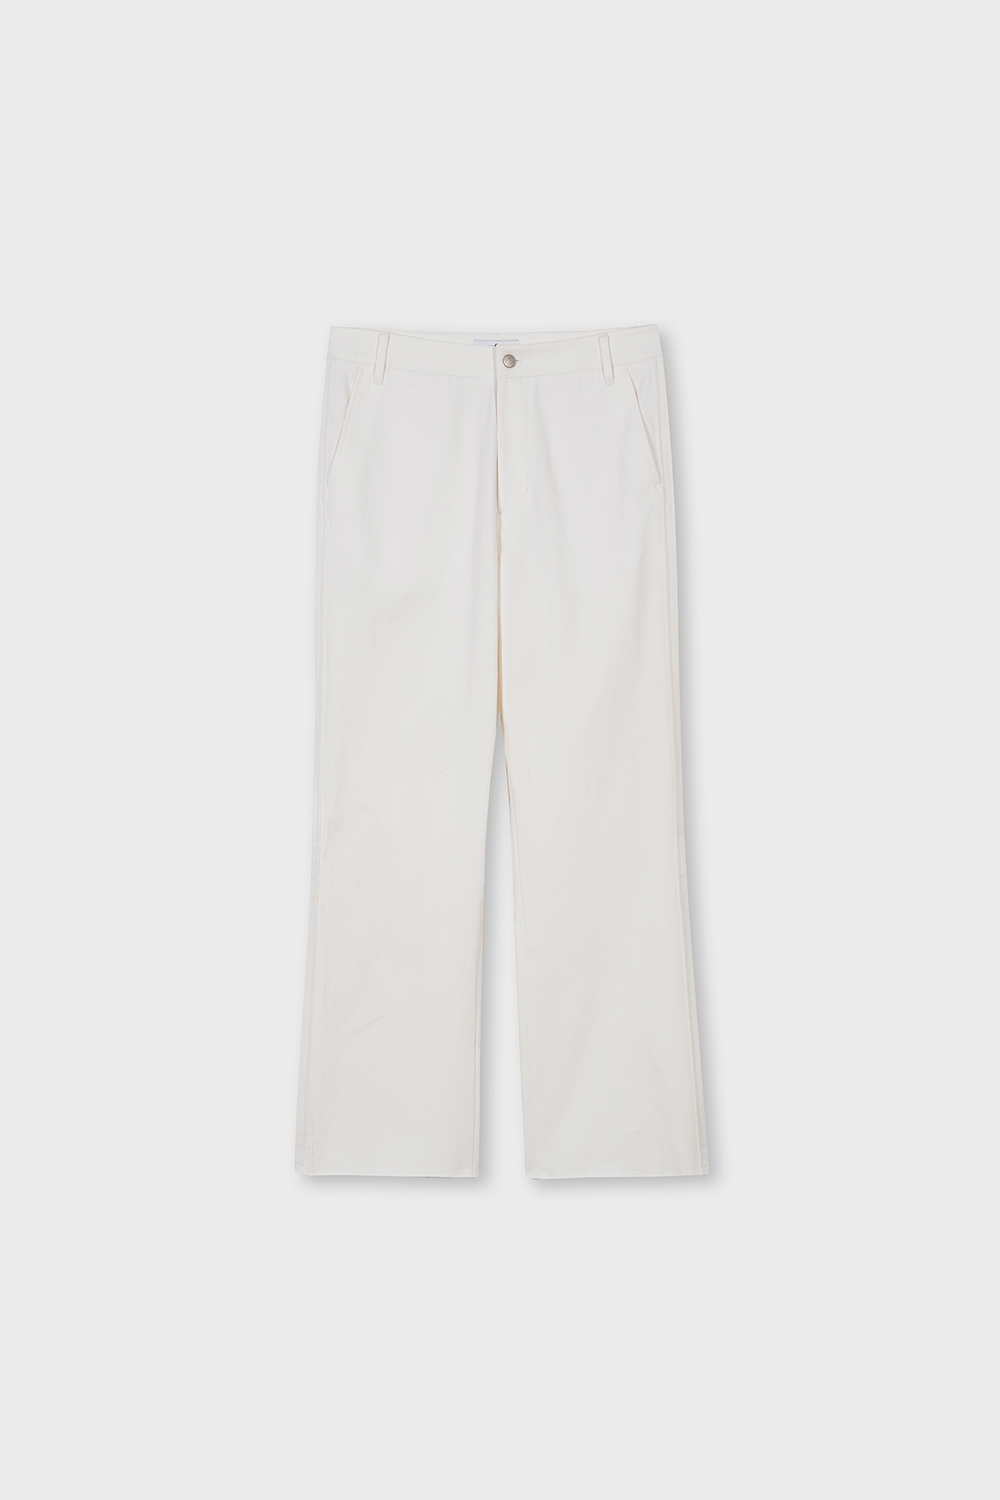 Cut Off Bootcut Pants (White)